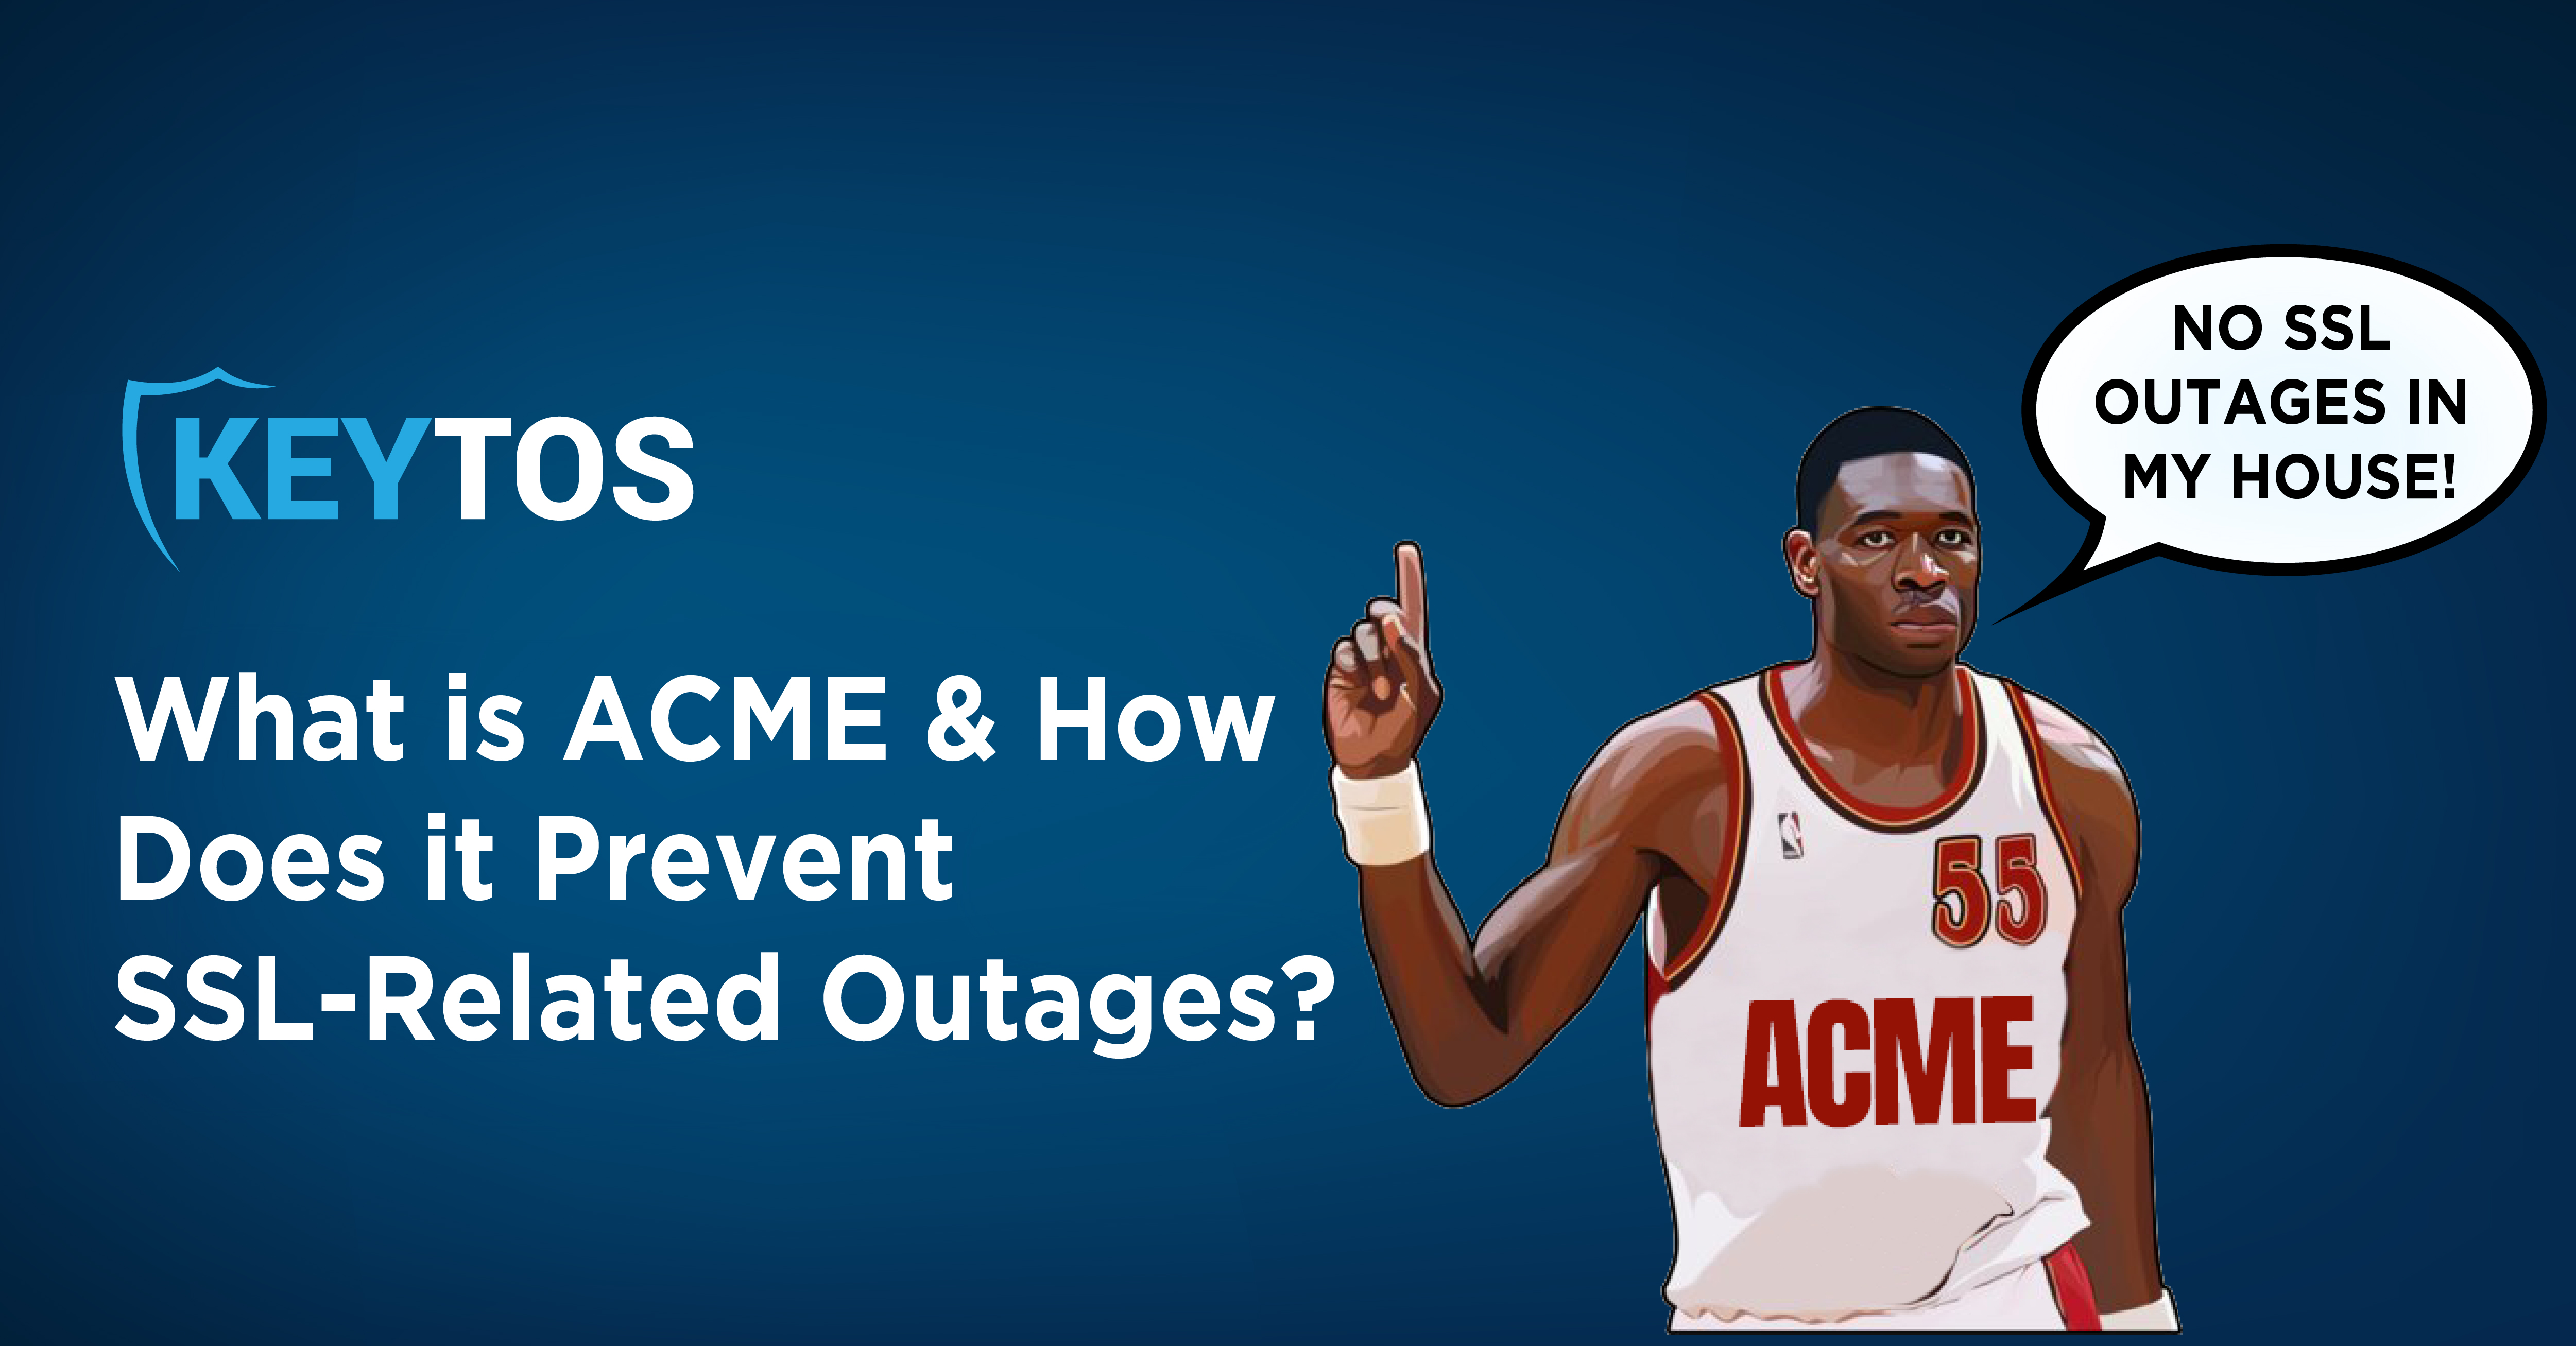 ¿Qué es ACME? ¿Cómo Previene ACME las Interrupciones Relacionadas con SSL?